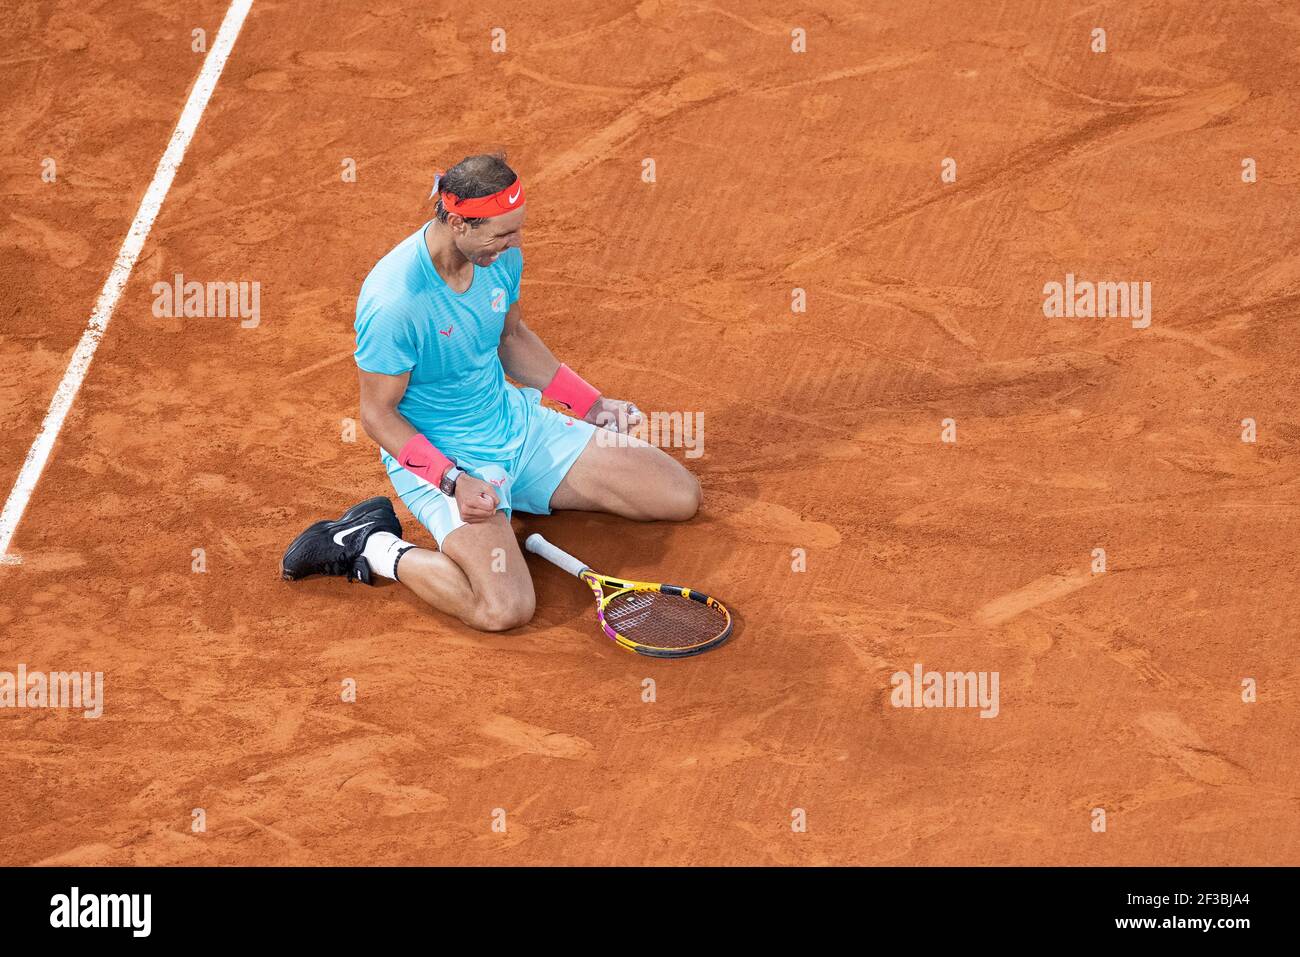 Le joueur de tennis espagnol Rafael Nadal se coulant à genoux pour célébrer ses 13ème championnats, tournoi de l'Open de France 2020, Paris, France. Banque D'Images